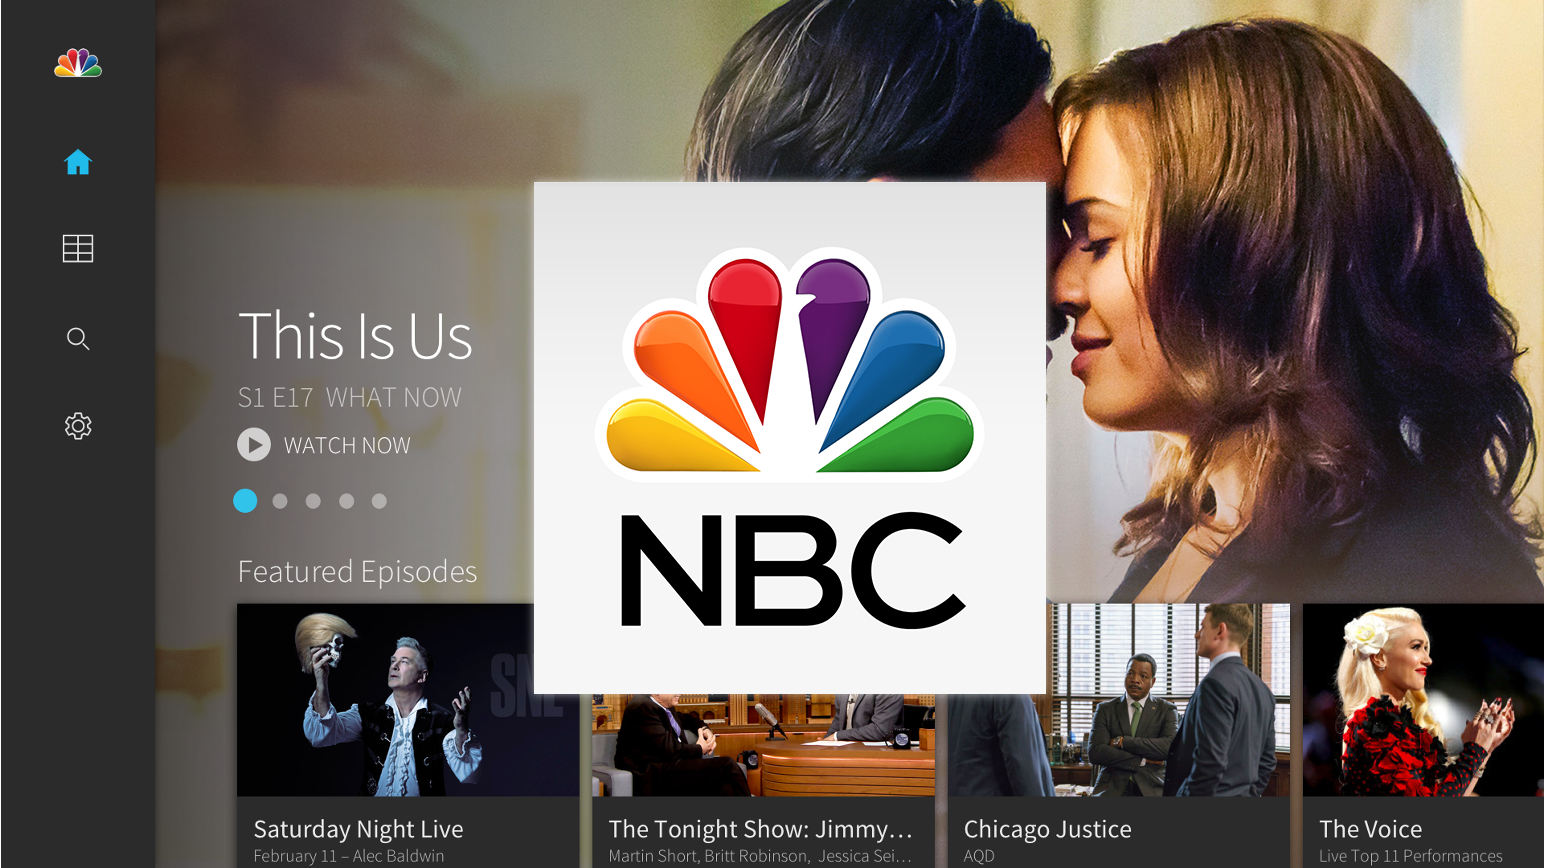 The NBC App